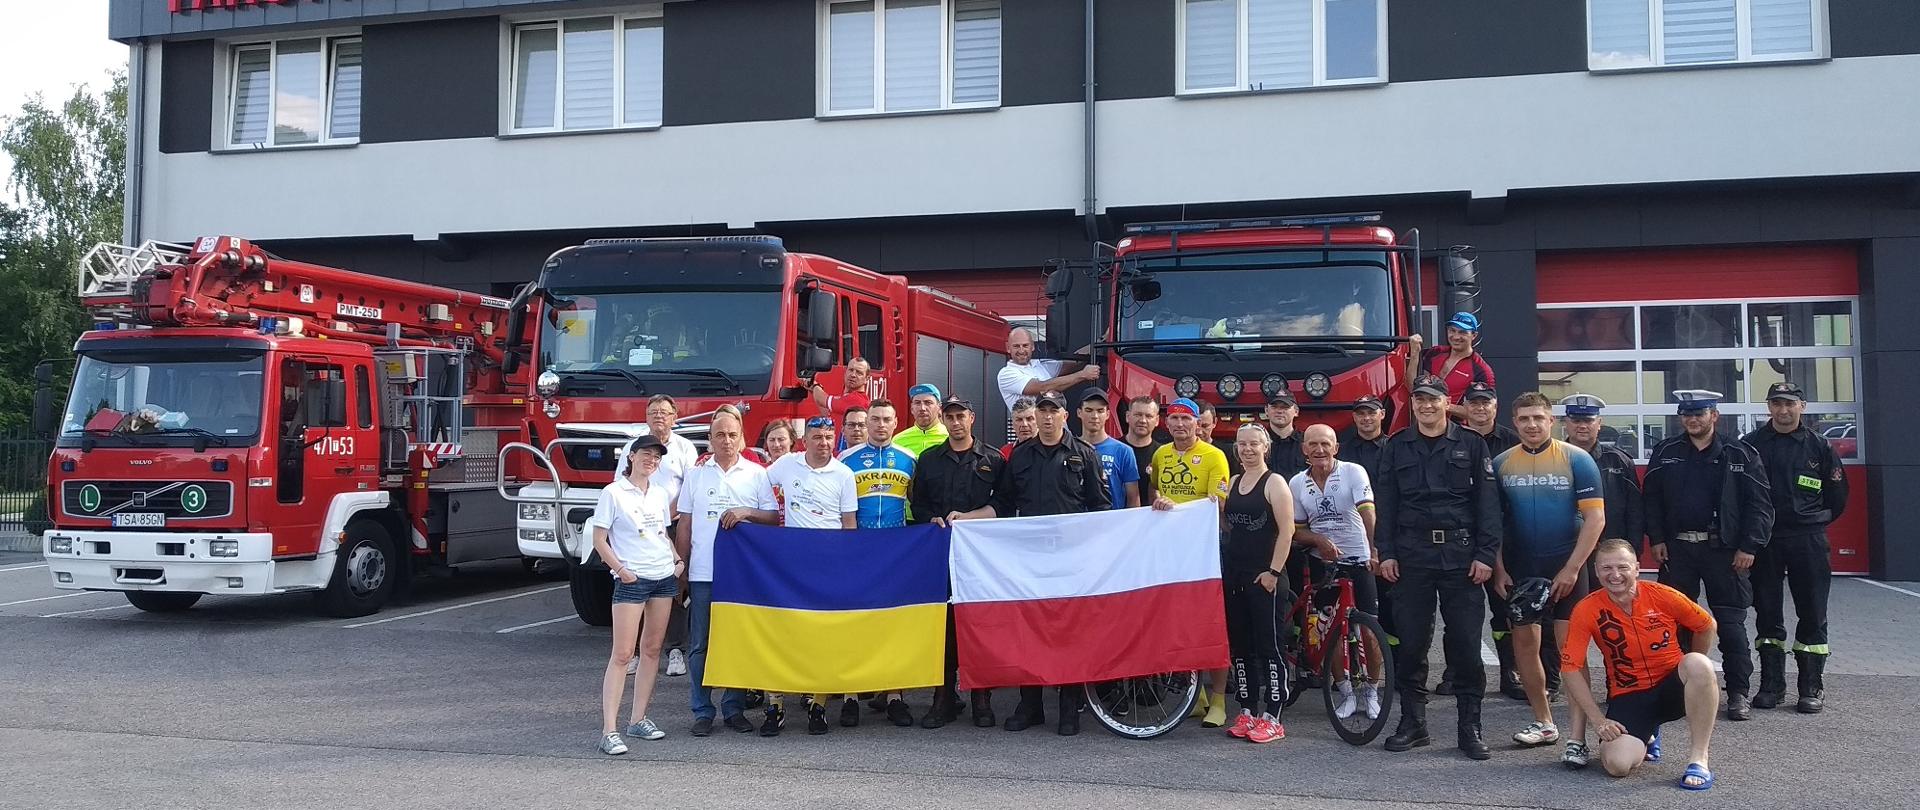 Zdjęcie zrobione na tle remizy i strażackich samochodów. Doz zdjęcia pozują strażacy i kolarze trzymający flagę Polski i Ukrainy